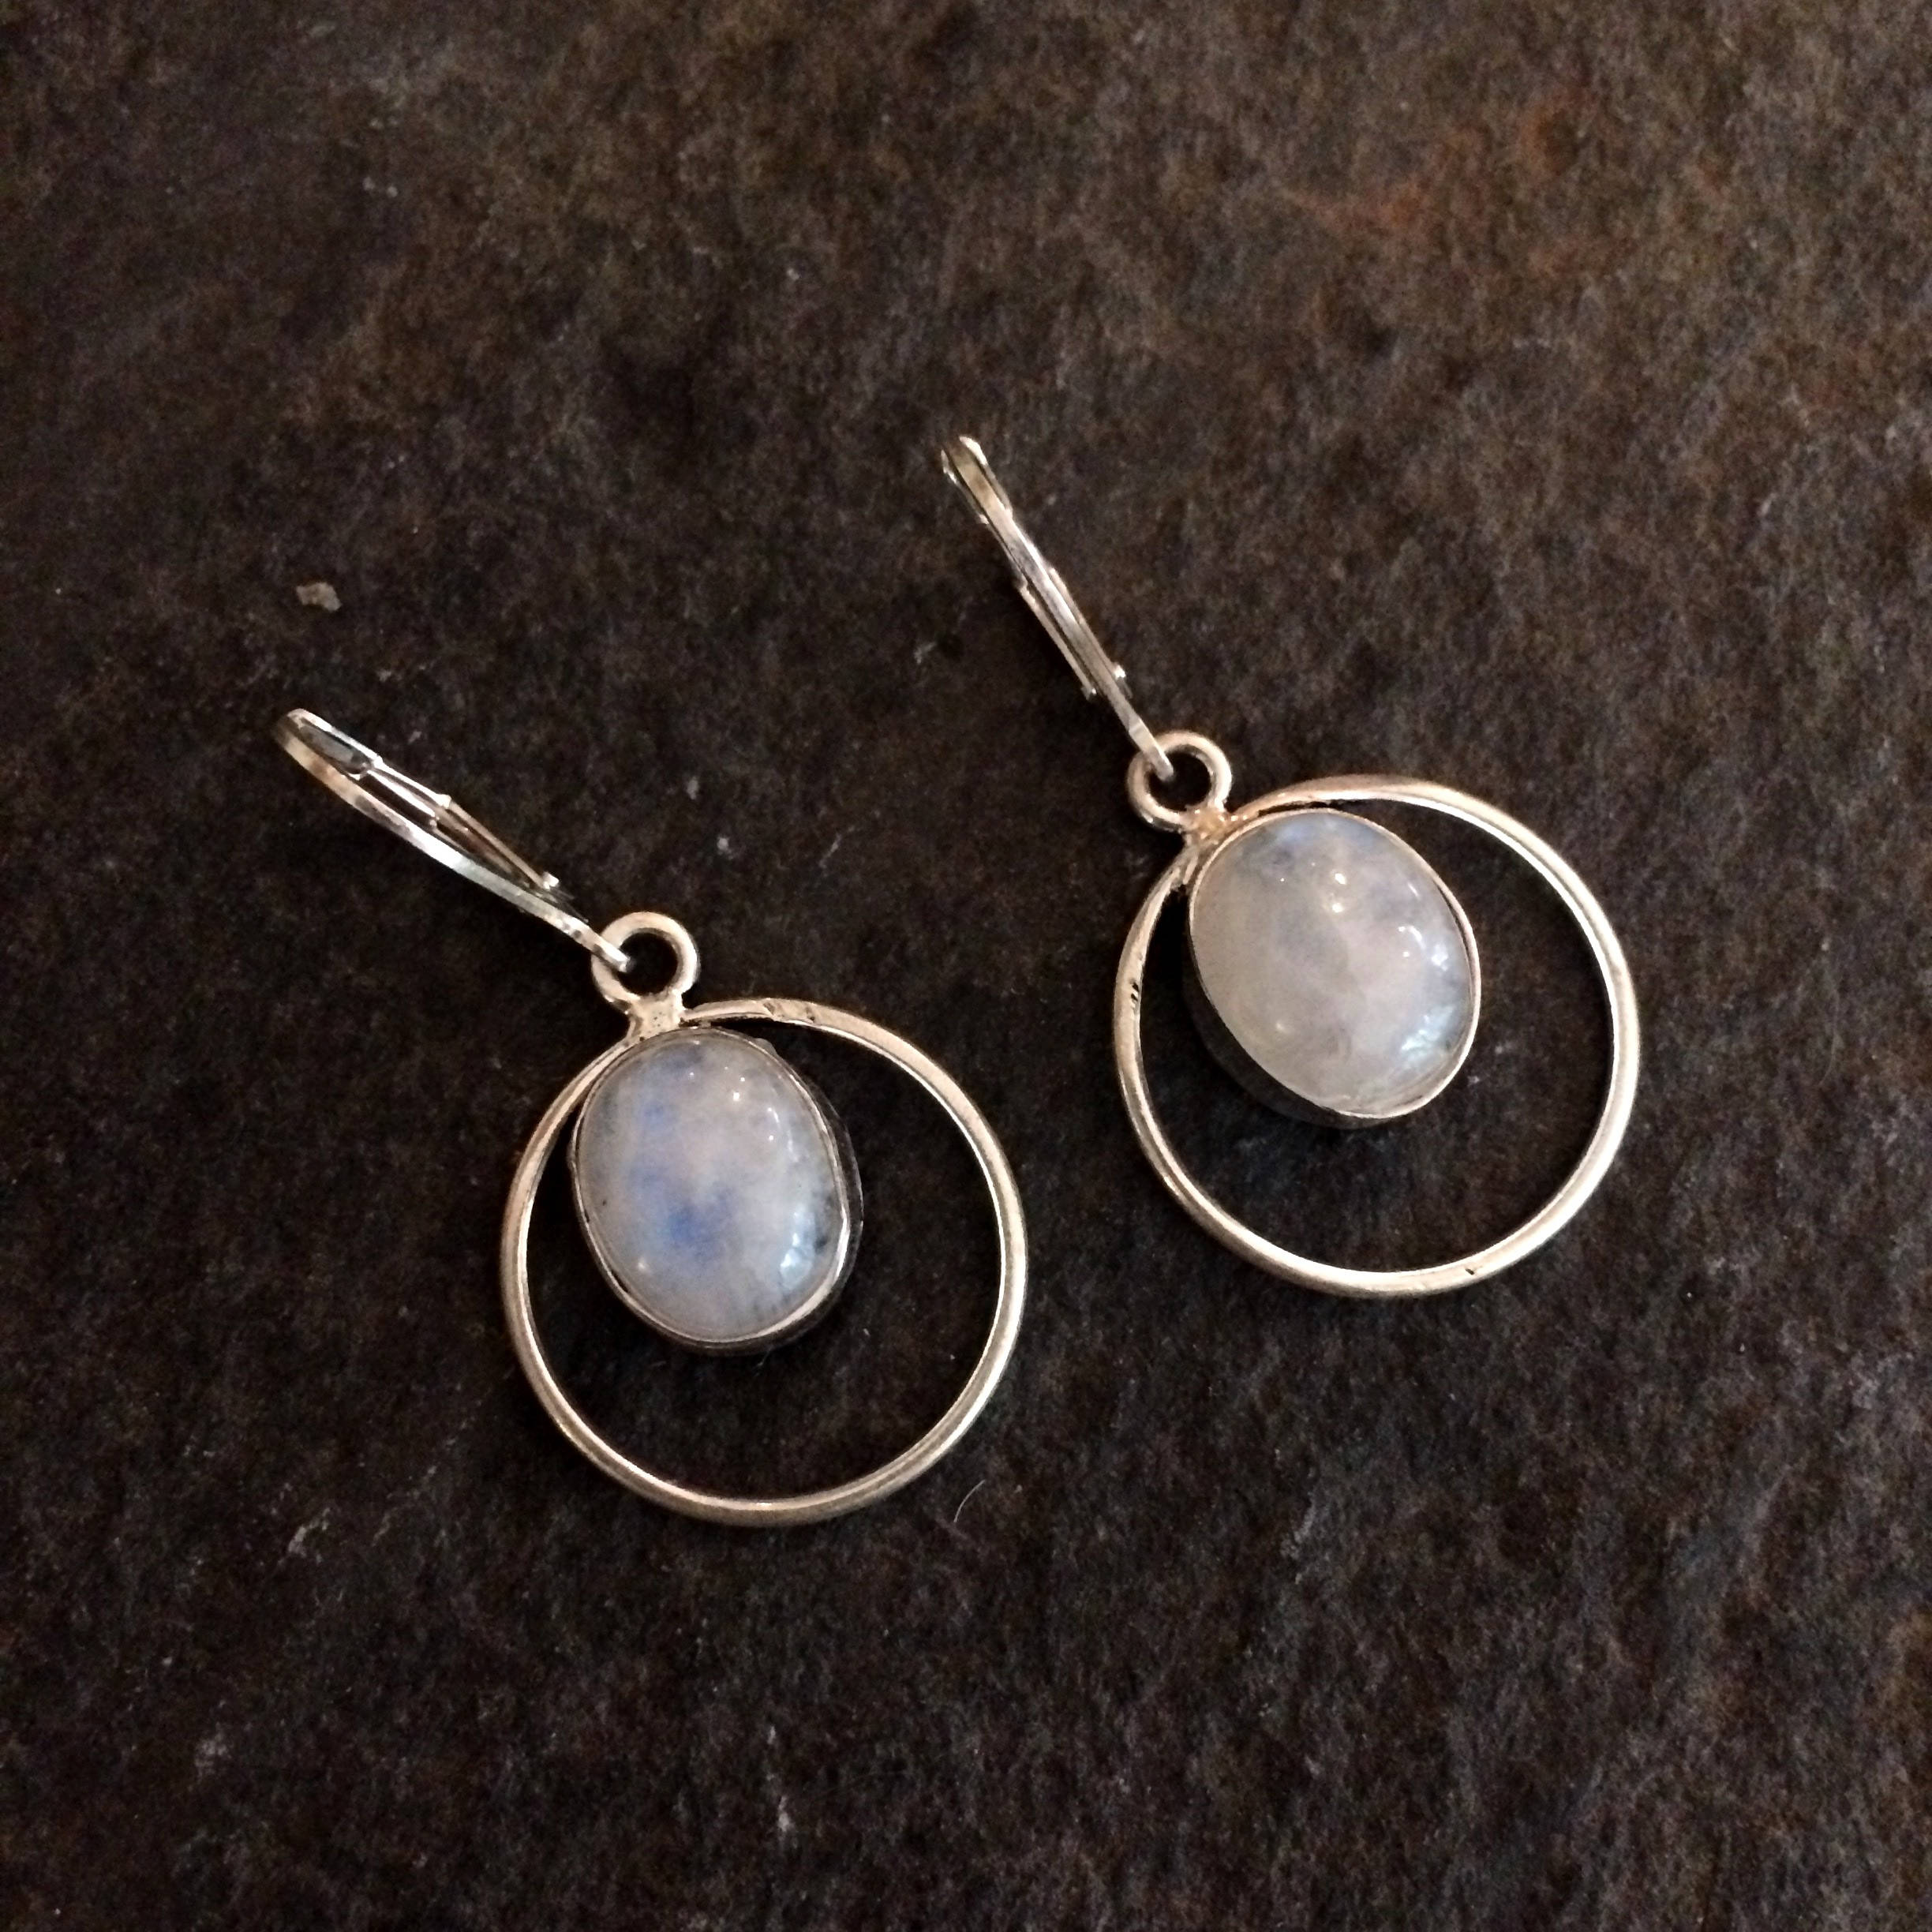 Moonstone earrings on Sterling Silver lever backs, hooks or studs ...